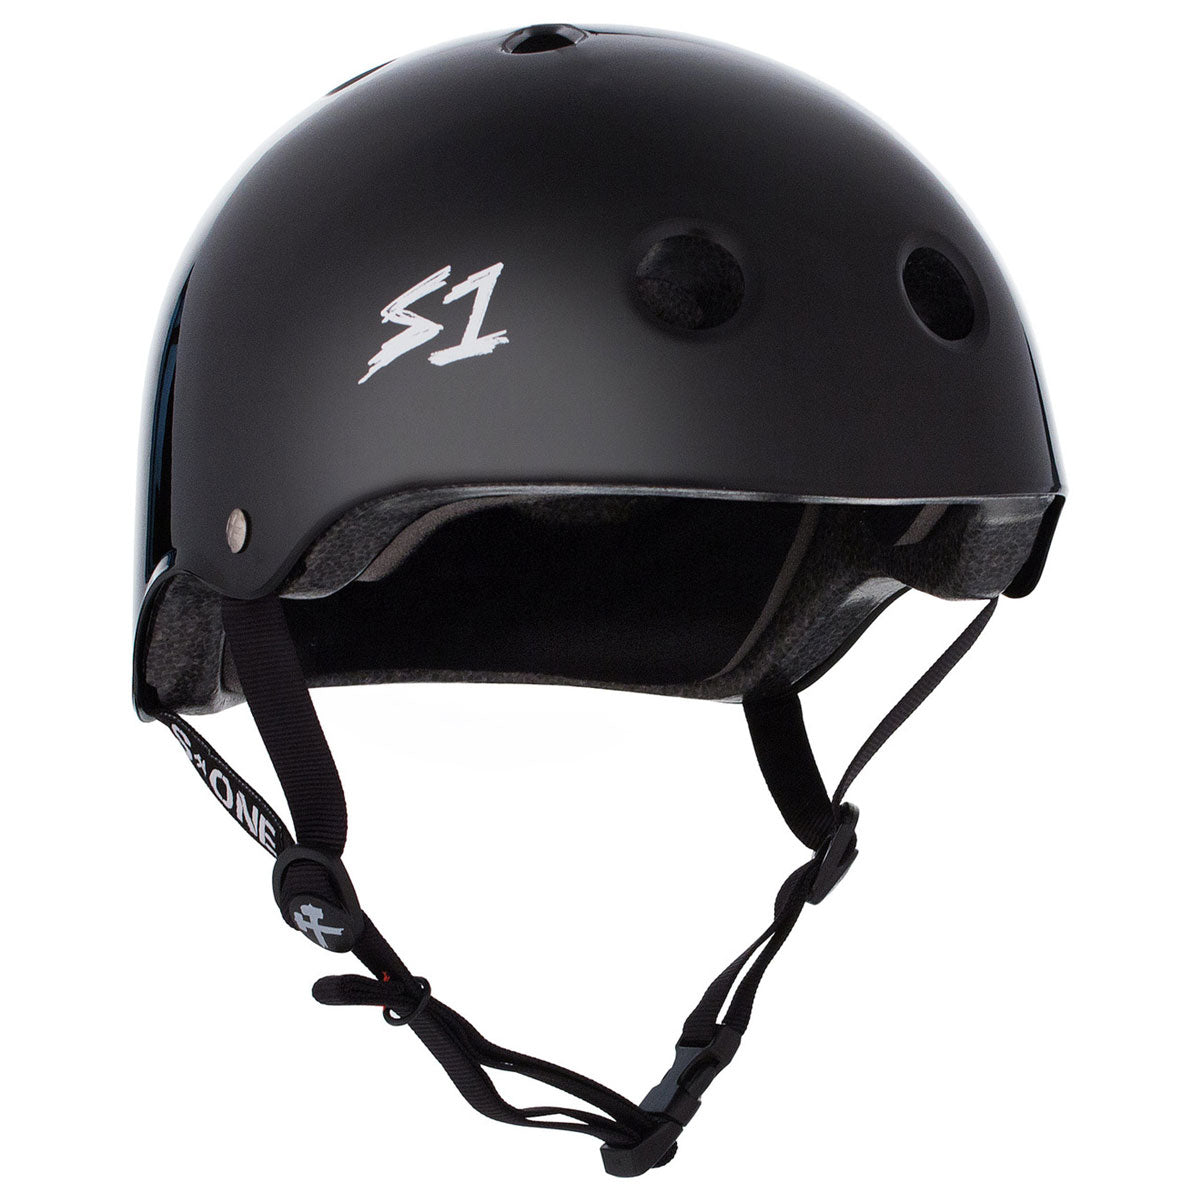 S-One Lifer Helmet - Black Gloss image 1